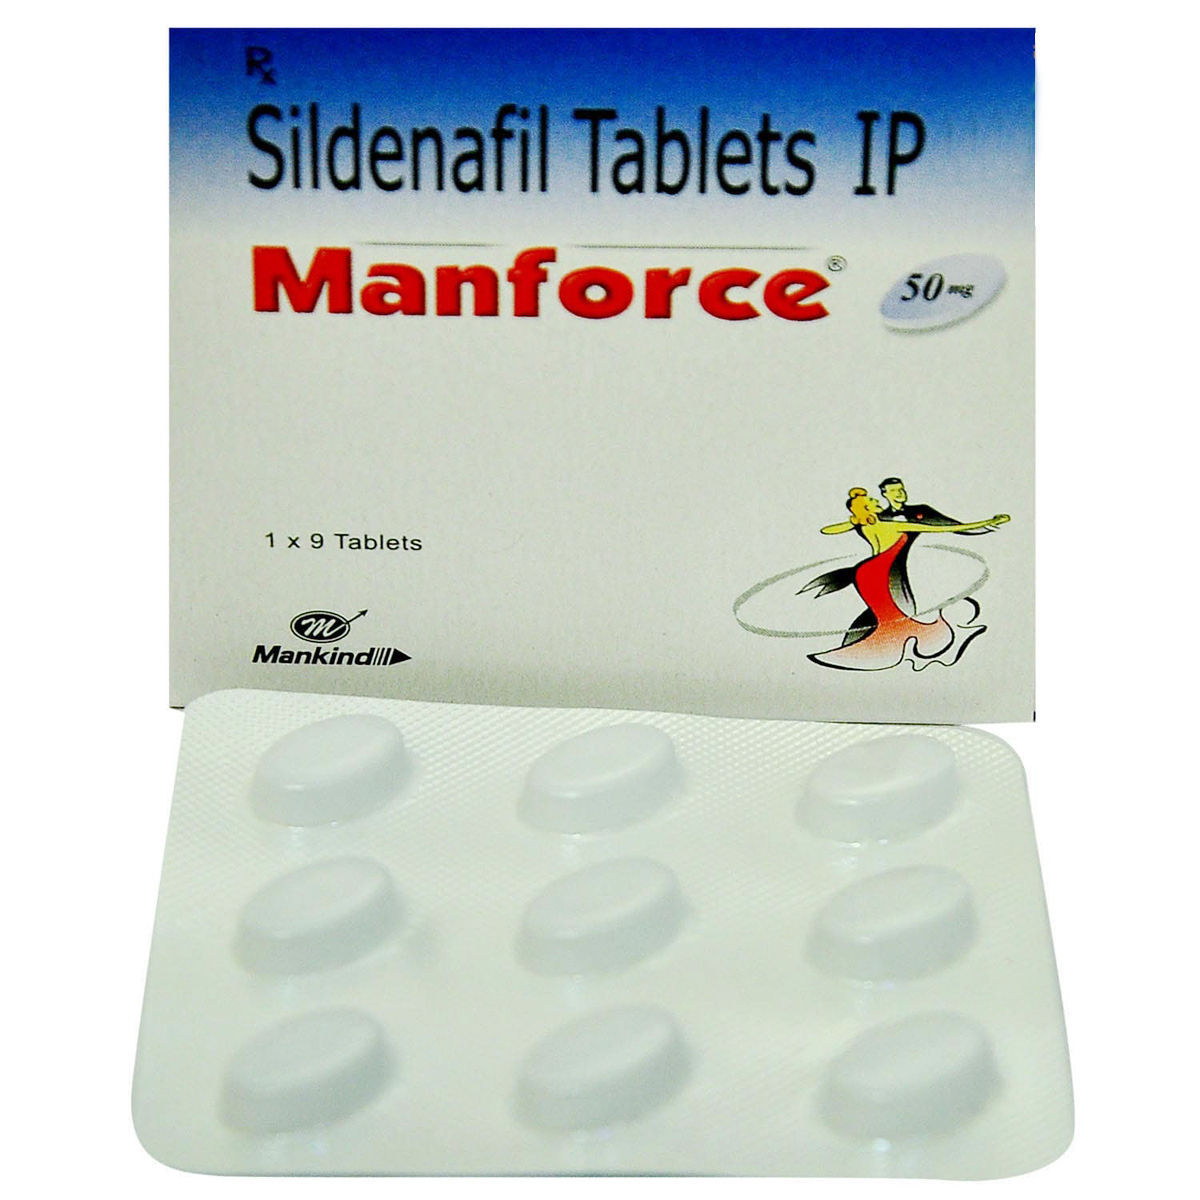 Manforce 50 Tablet 9's, Pack of 9 TABLETS